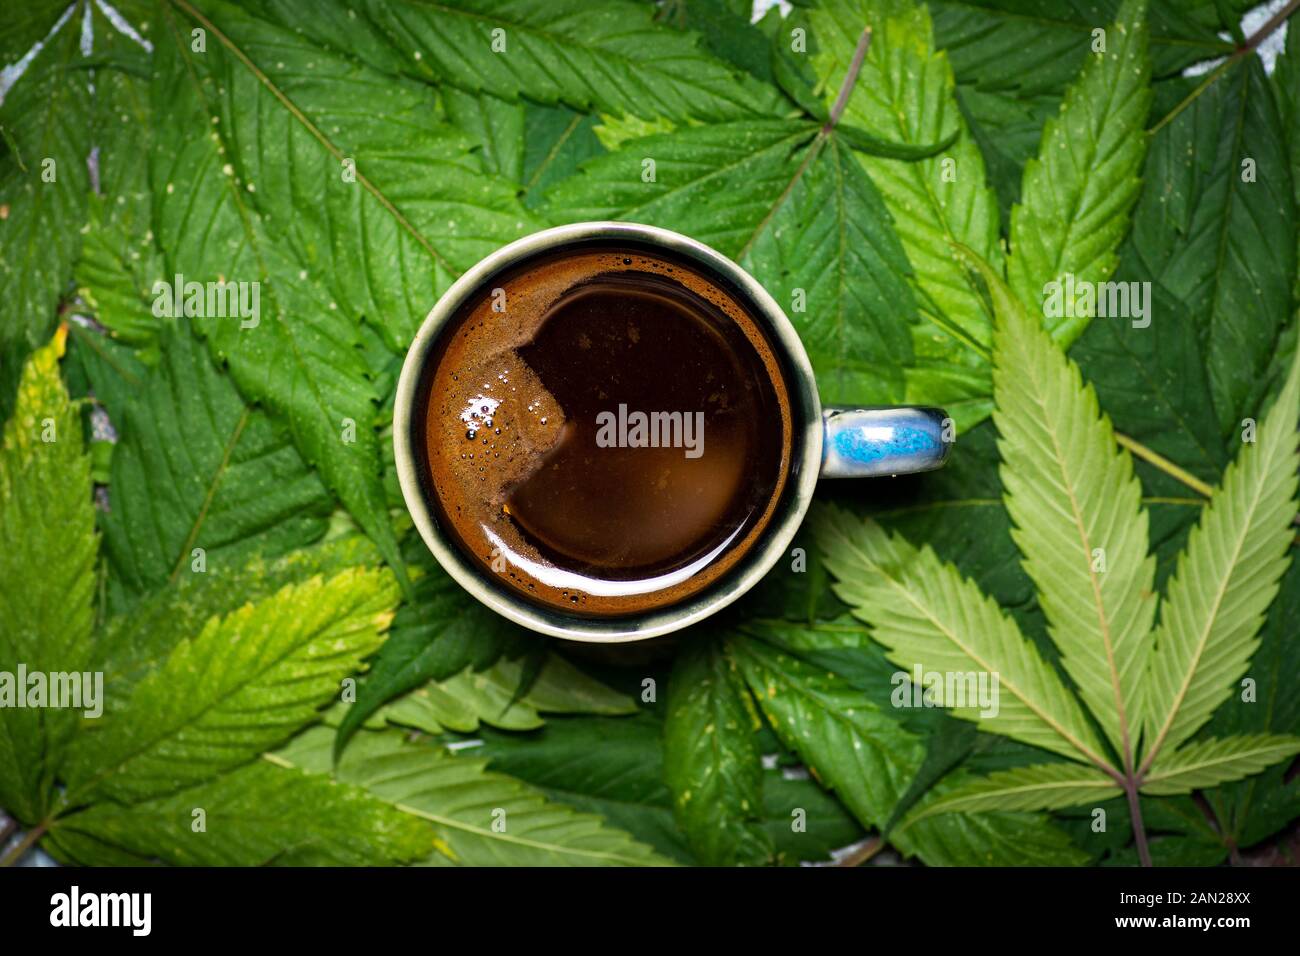 Una tazza di caffè sulla marijuana lascia il motivo di fondo Foto Stock